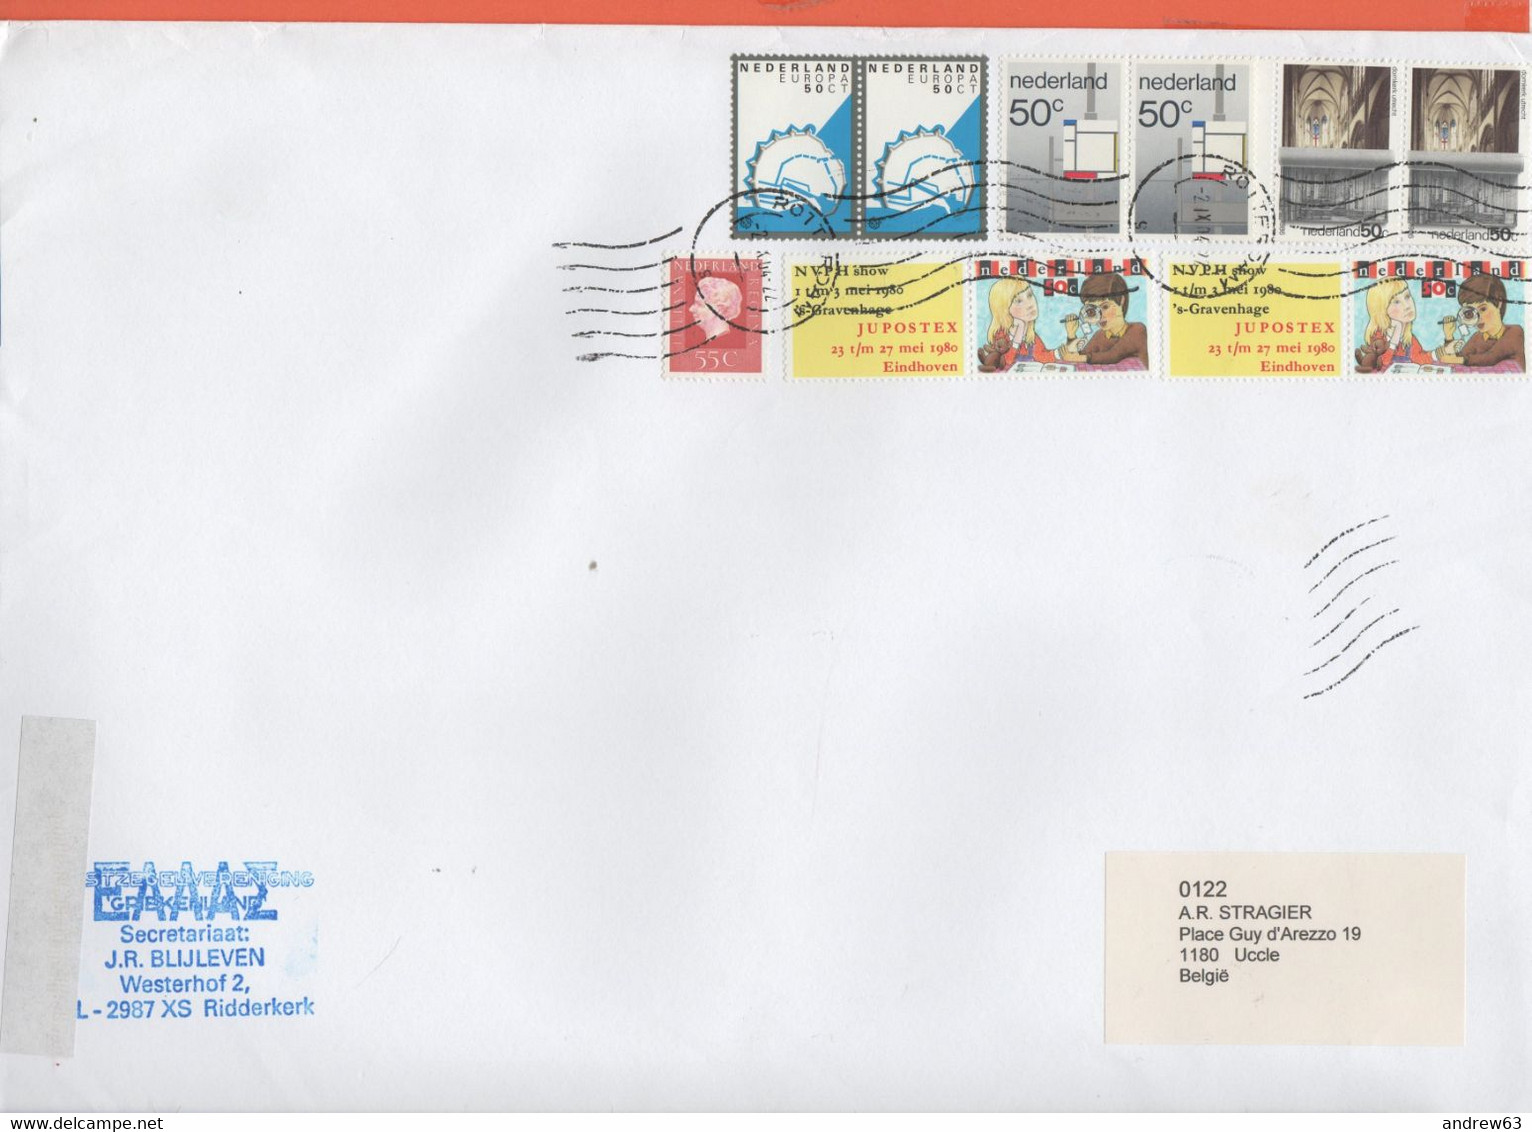 OLANDA - NEDERLAND - Paesi Bassi - 2004 - 11 Stamps - Big Envelope - Viaggiata Da Rotterdam Per Uccle,Brussels, Belgium - Covers & Documents